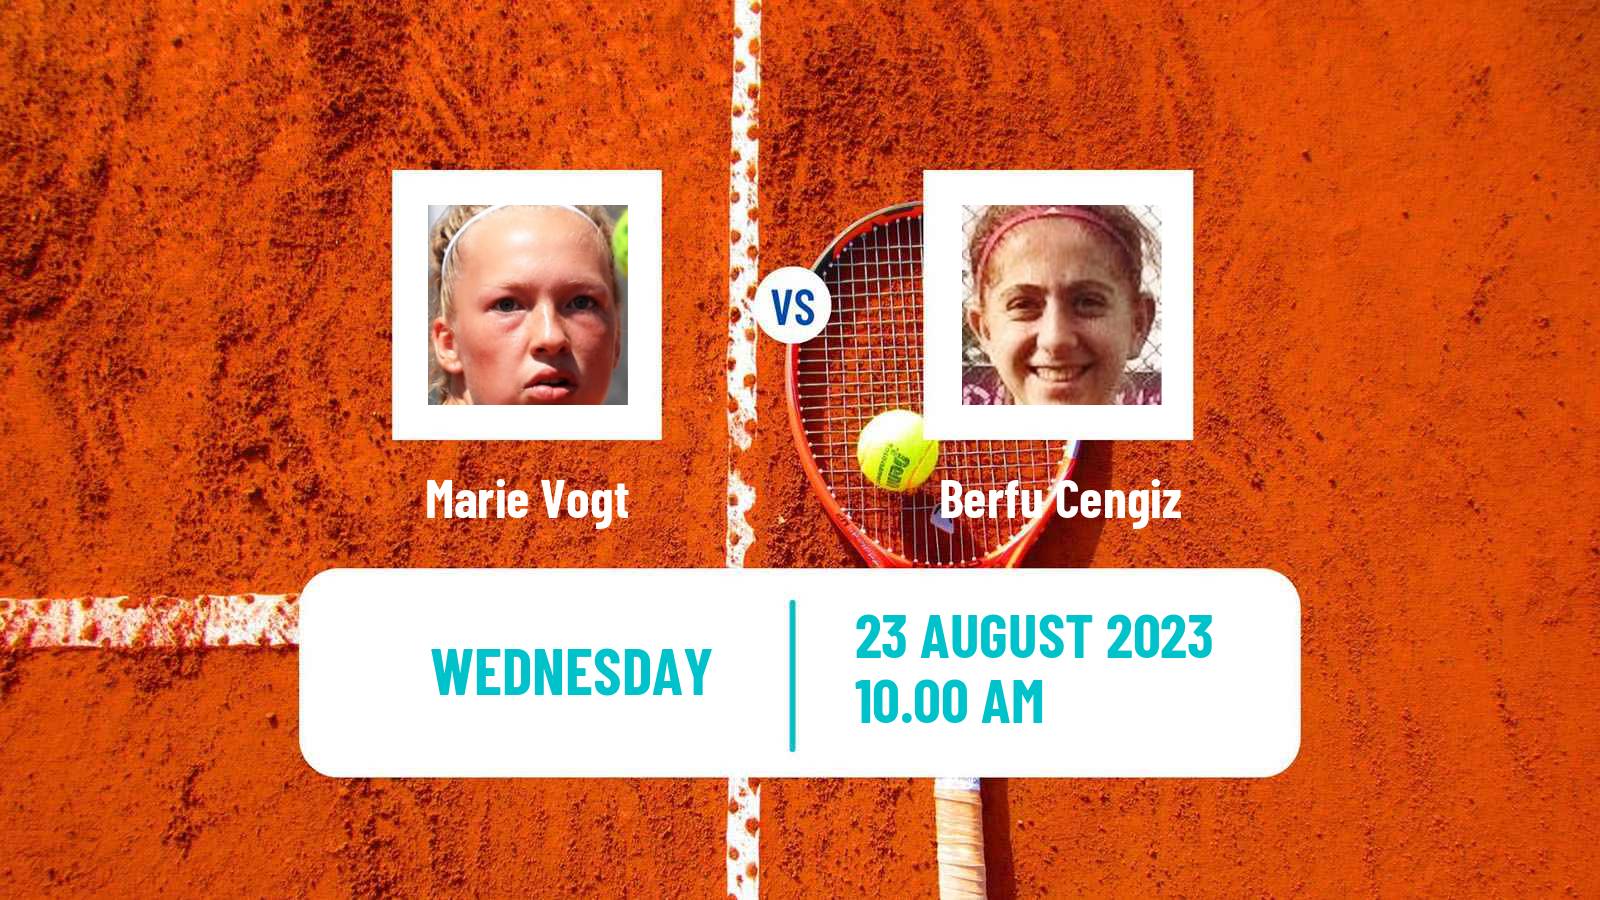 Tennis ITF W25 Braunschweig Women Marie Vogt - Berfu Cengiz